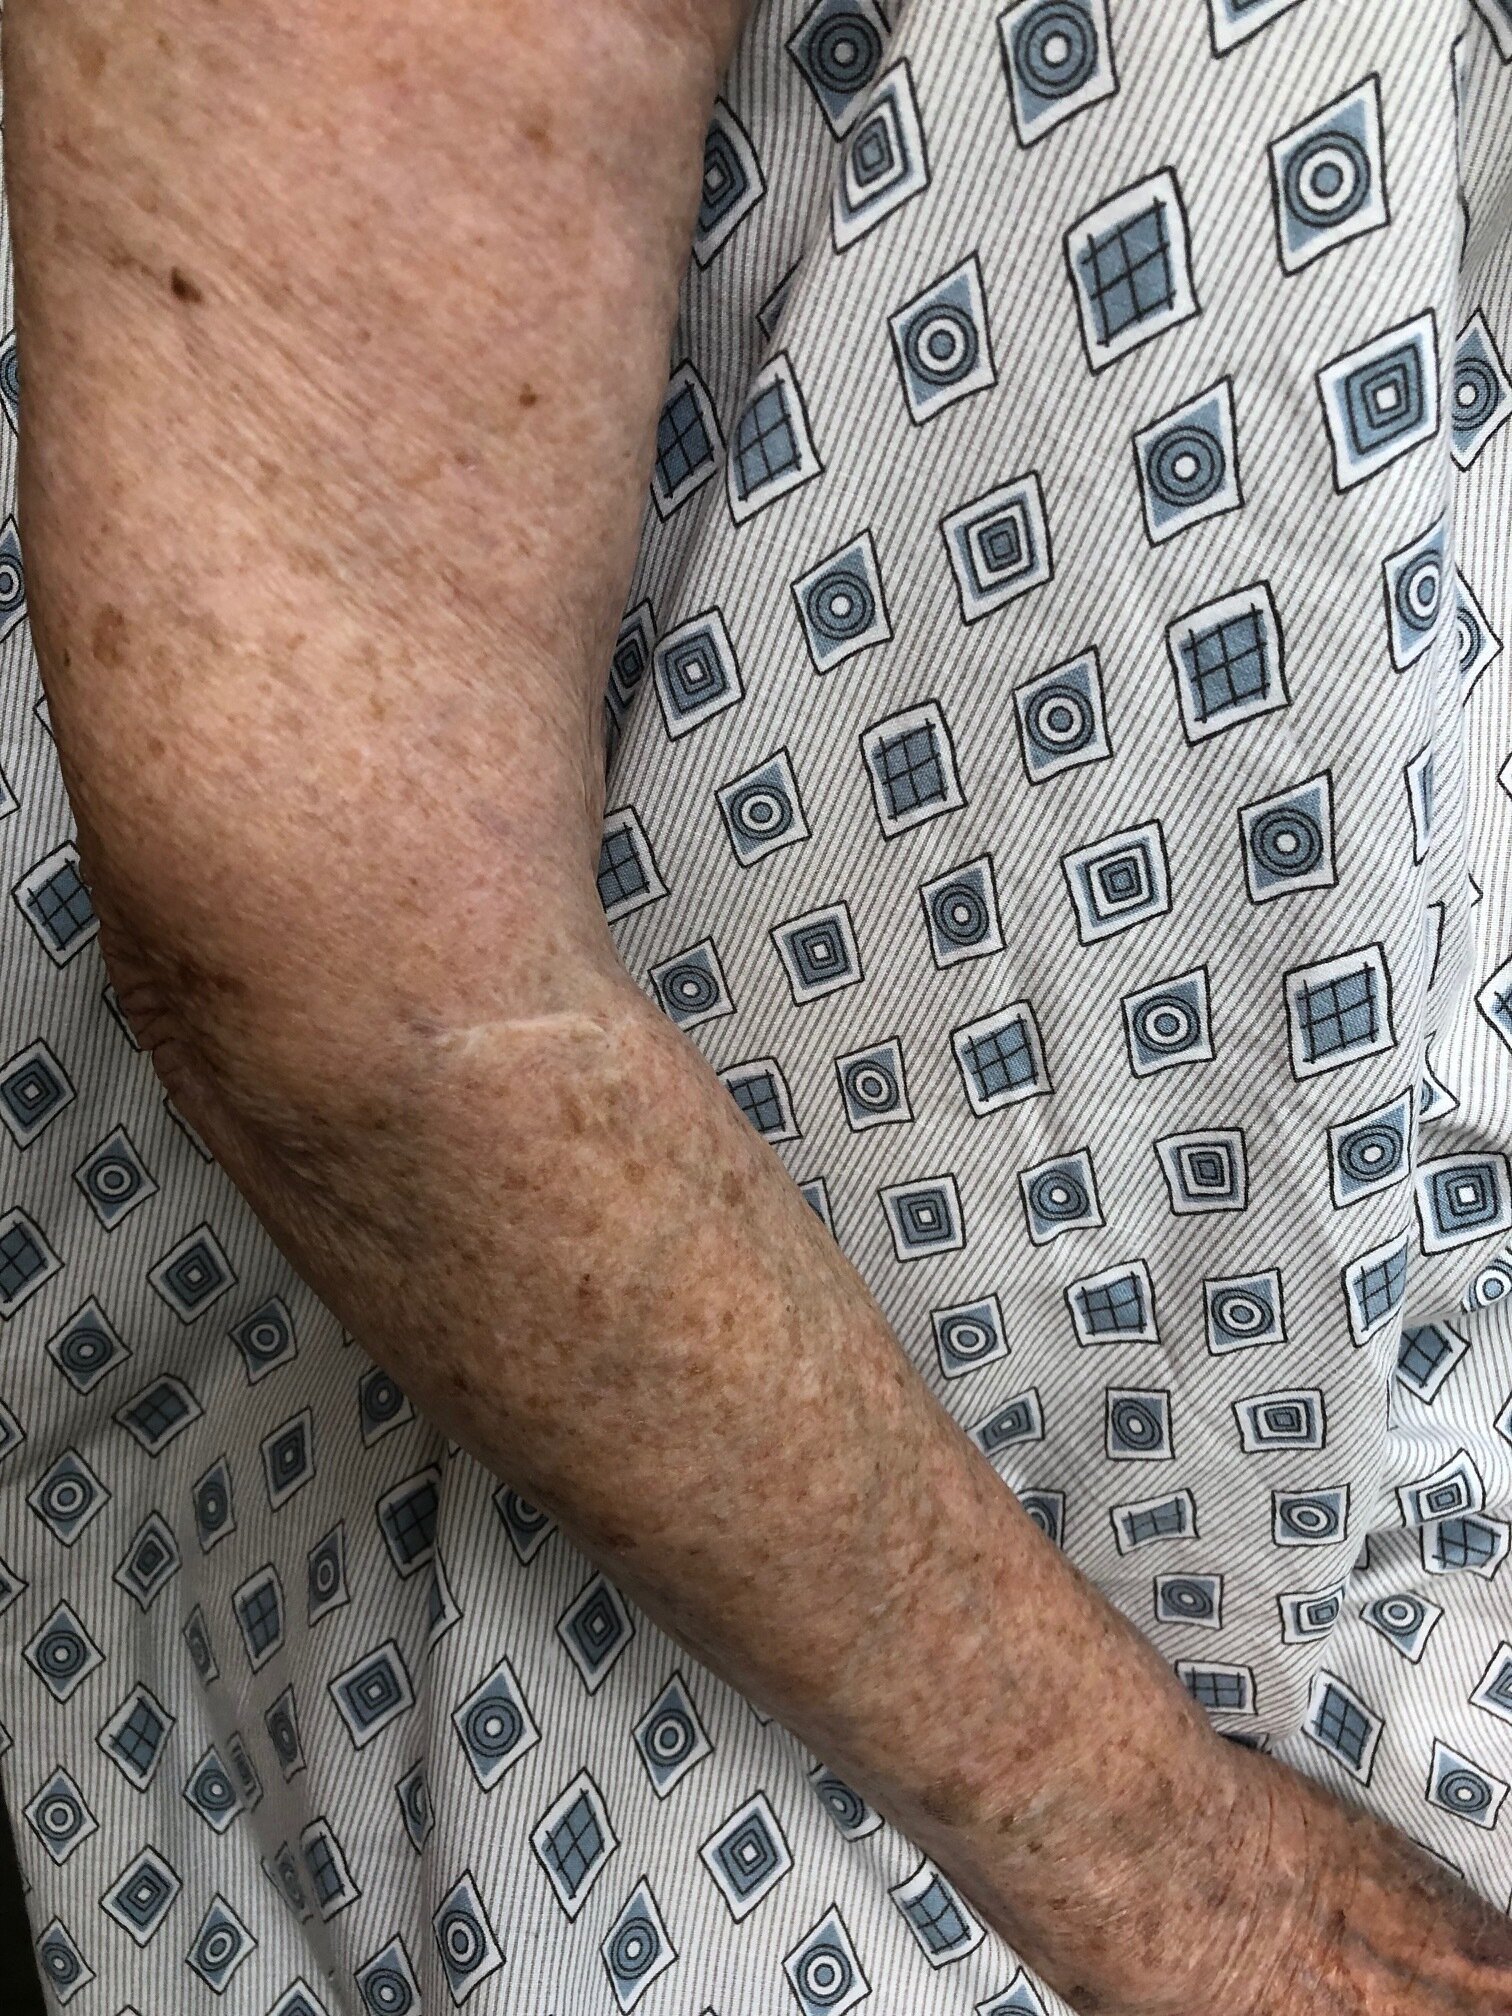 Surgical scar on sun damaged skin